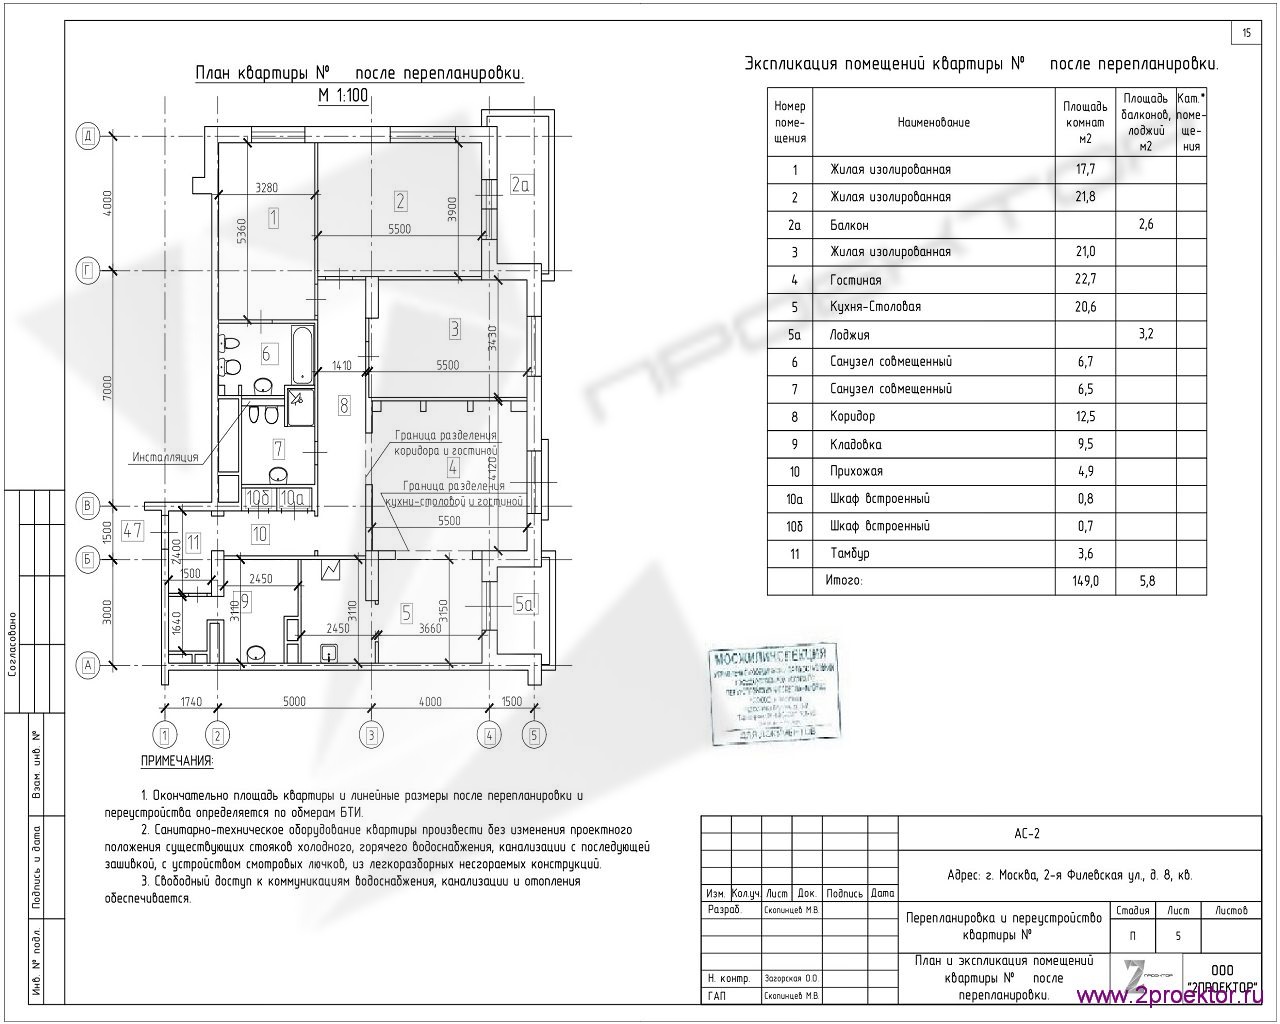 Вариант планировки квартиры в Жилом комплексе Филичета, разработанный специалистами ООО «2Проектор» и согласованный Мосжилинспекцией.